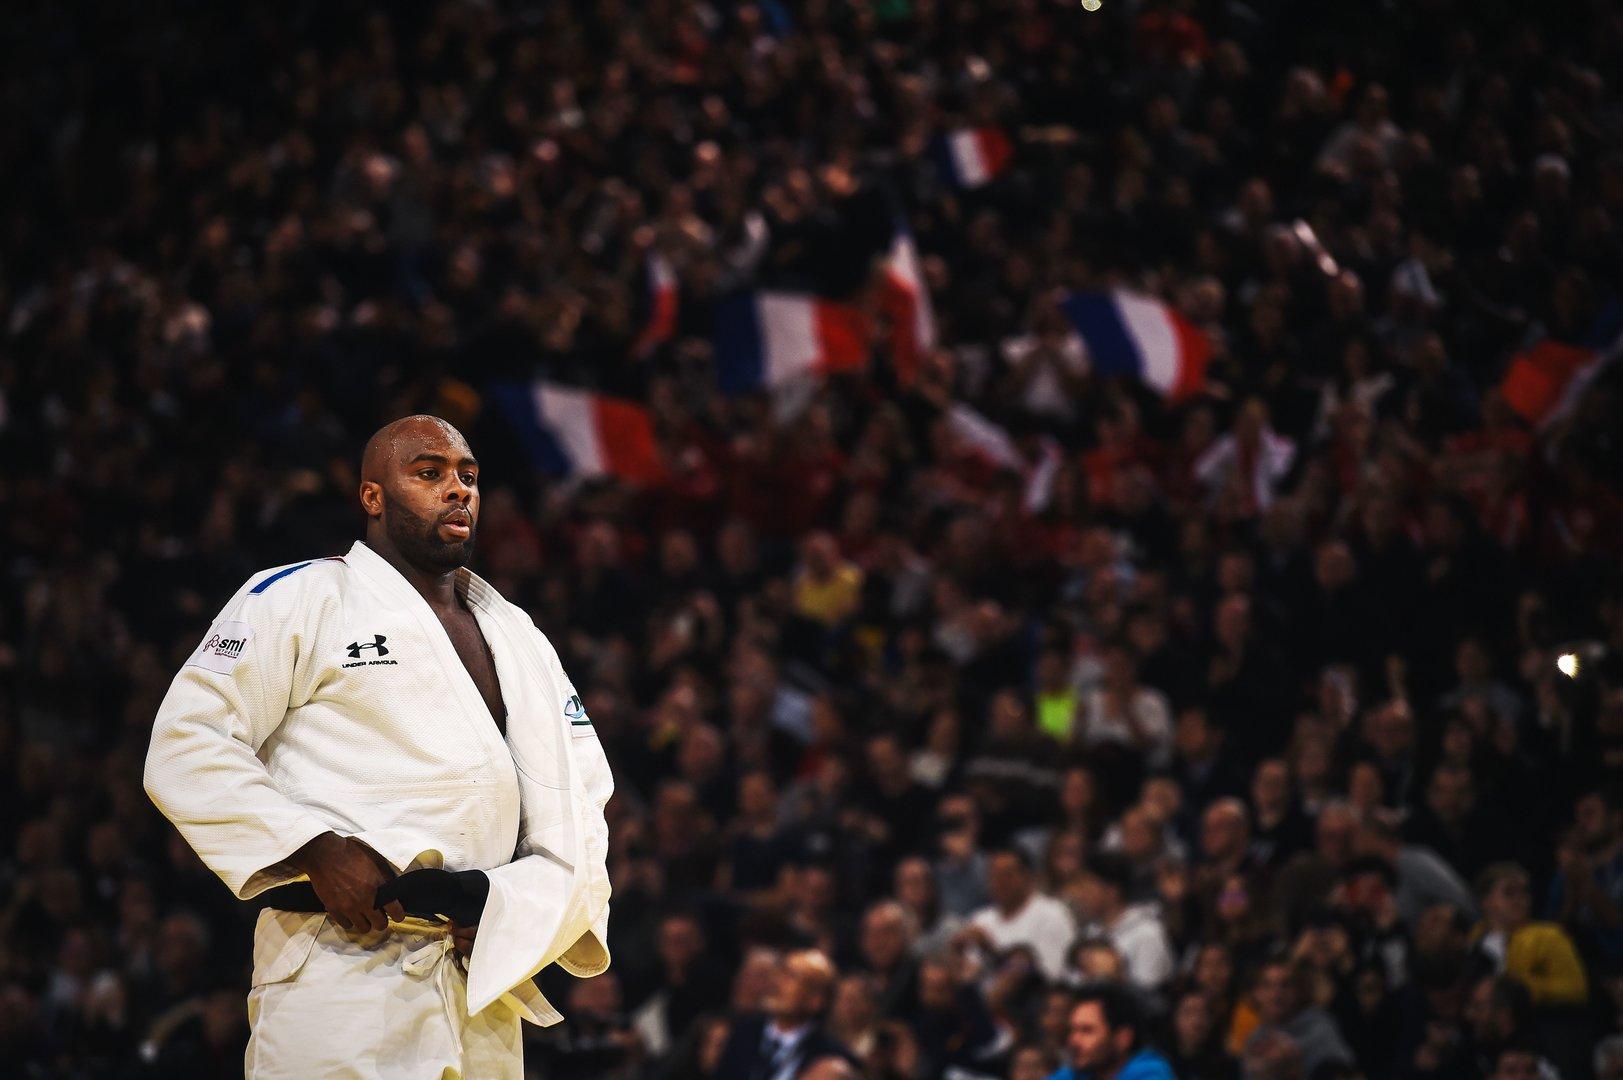 Nach 154 Siegen in Folge: Historische Niederlage für Judoka